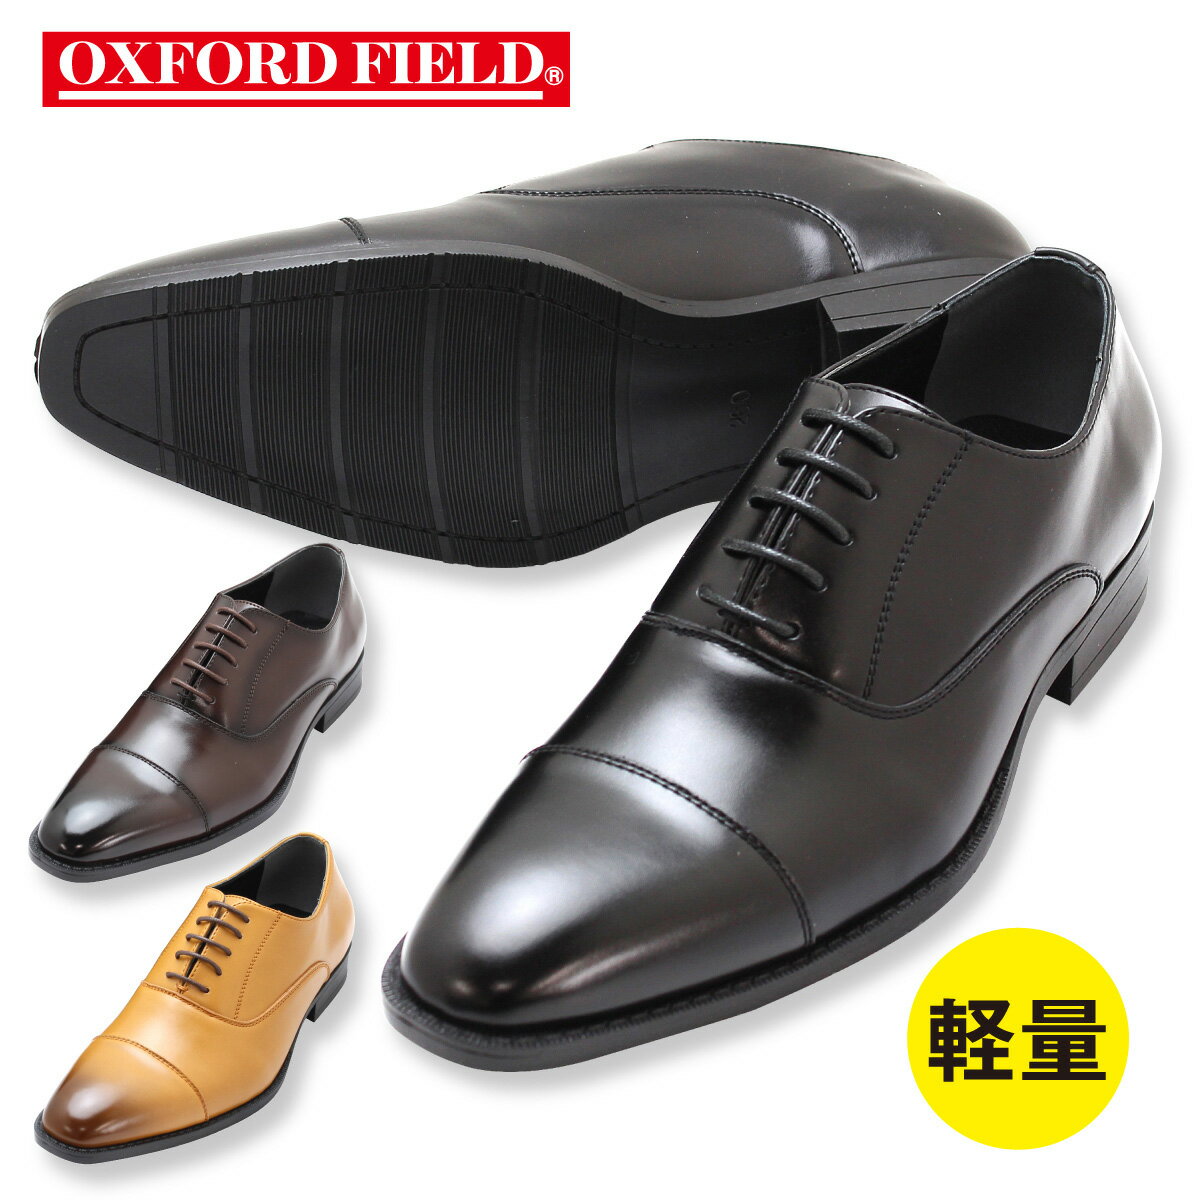 ストレートチップ 軽量 ビジネスシューズ 抜群のコストパフォーマンス メンズ 紳士靴 3色 オックスフォードフィールド ブラック ブラウン ダークブラウン